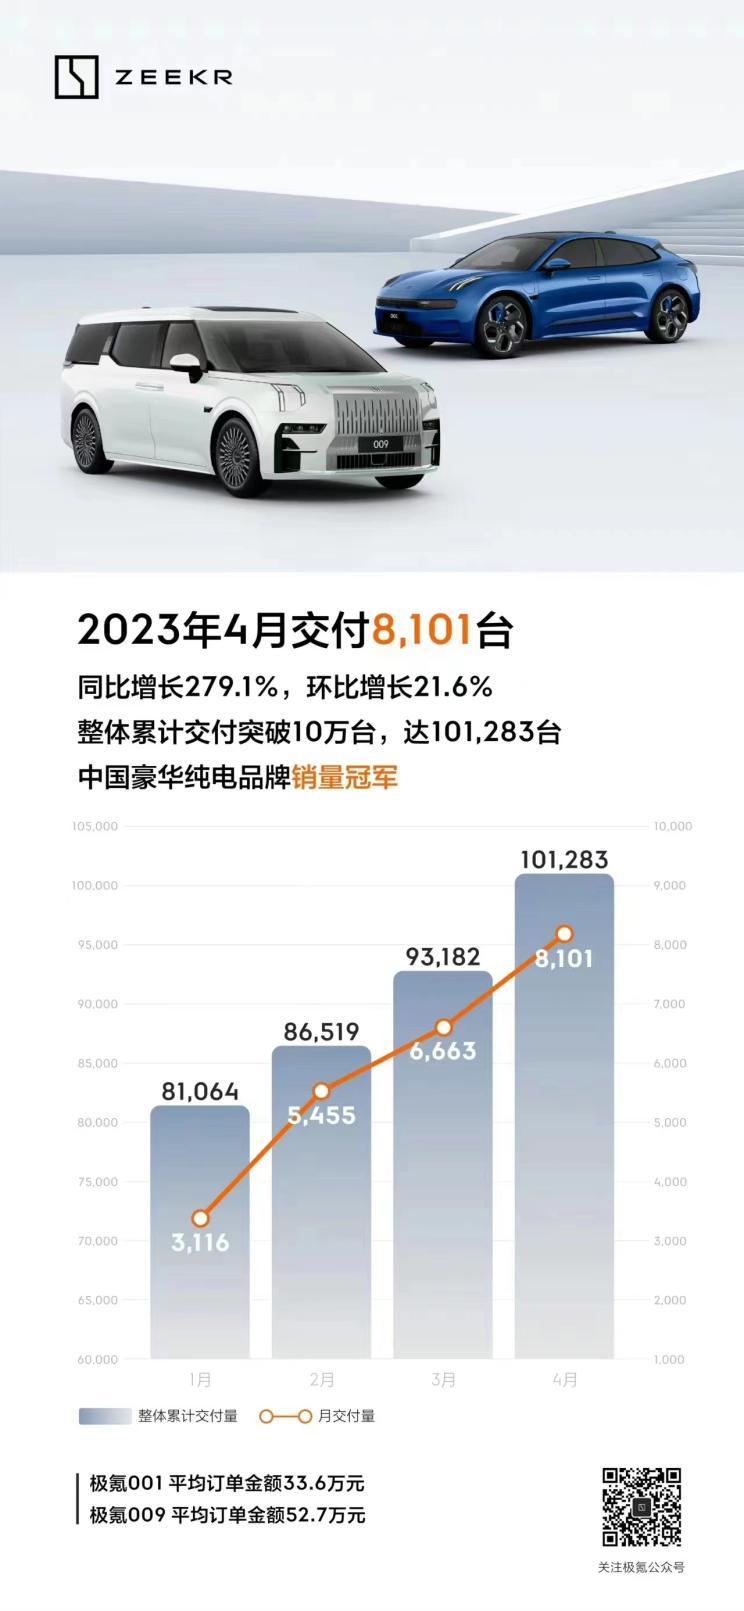 В апреле Ji Krypton поставила 8101 новый автомобиль, увеличившись на 279,1% по сравнению с аналогичным периодом прошлого года.